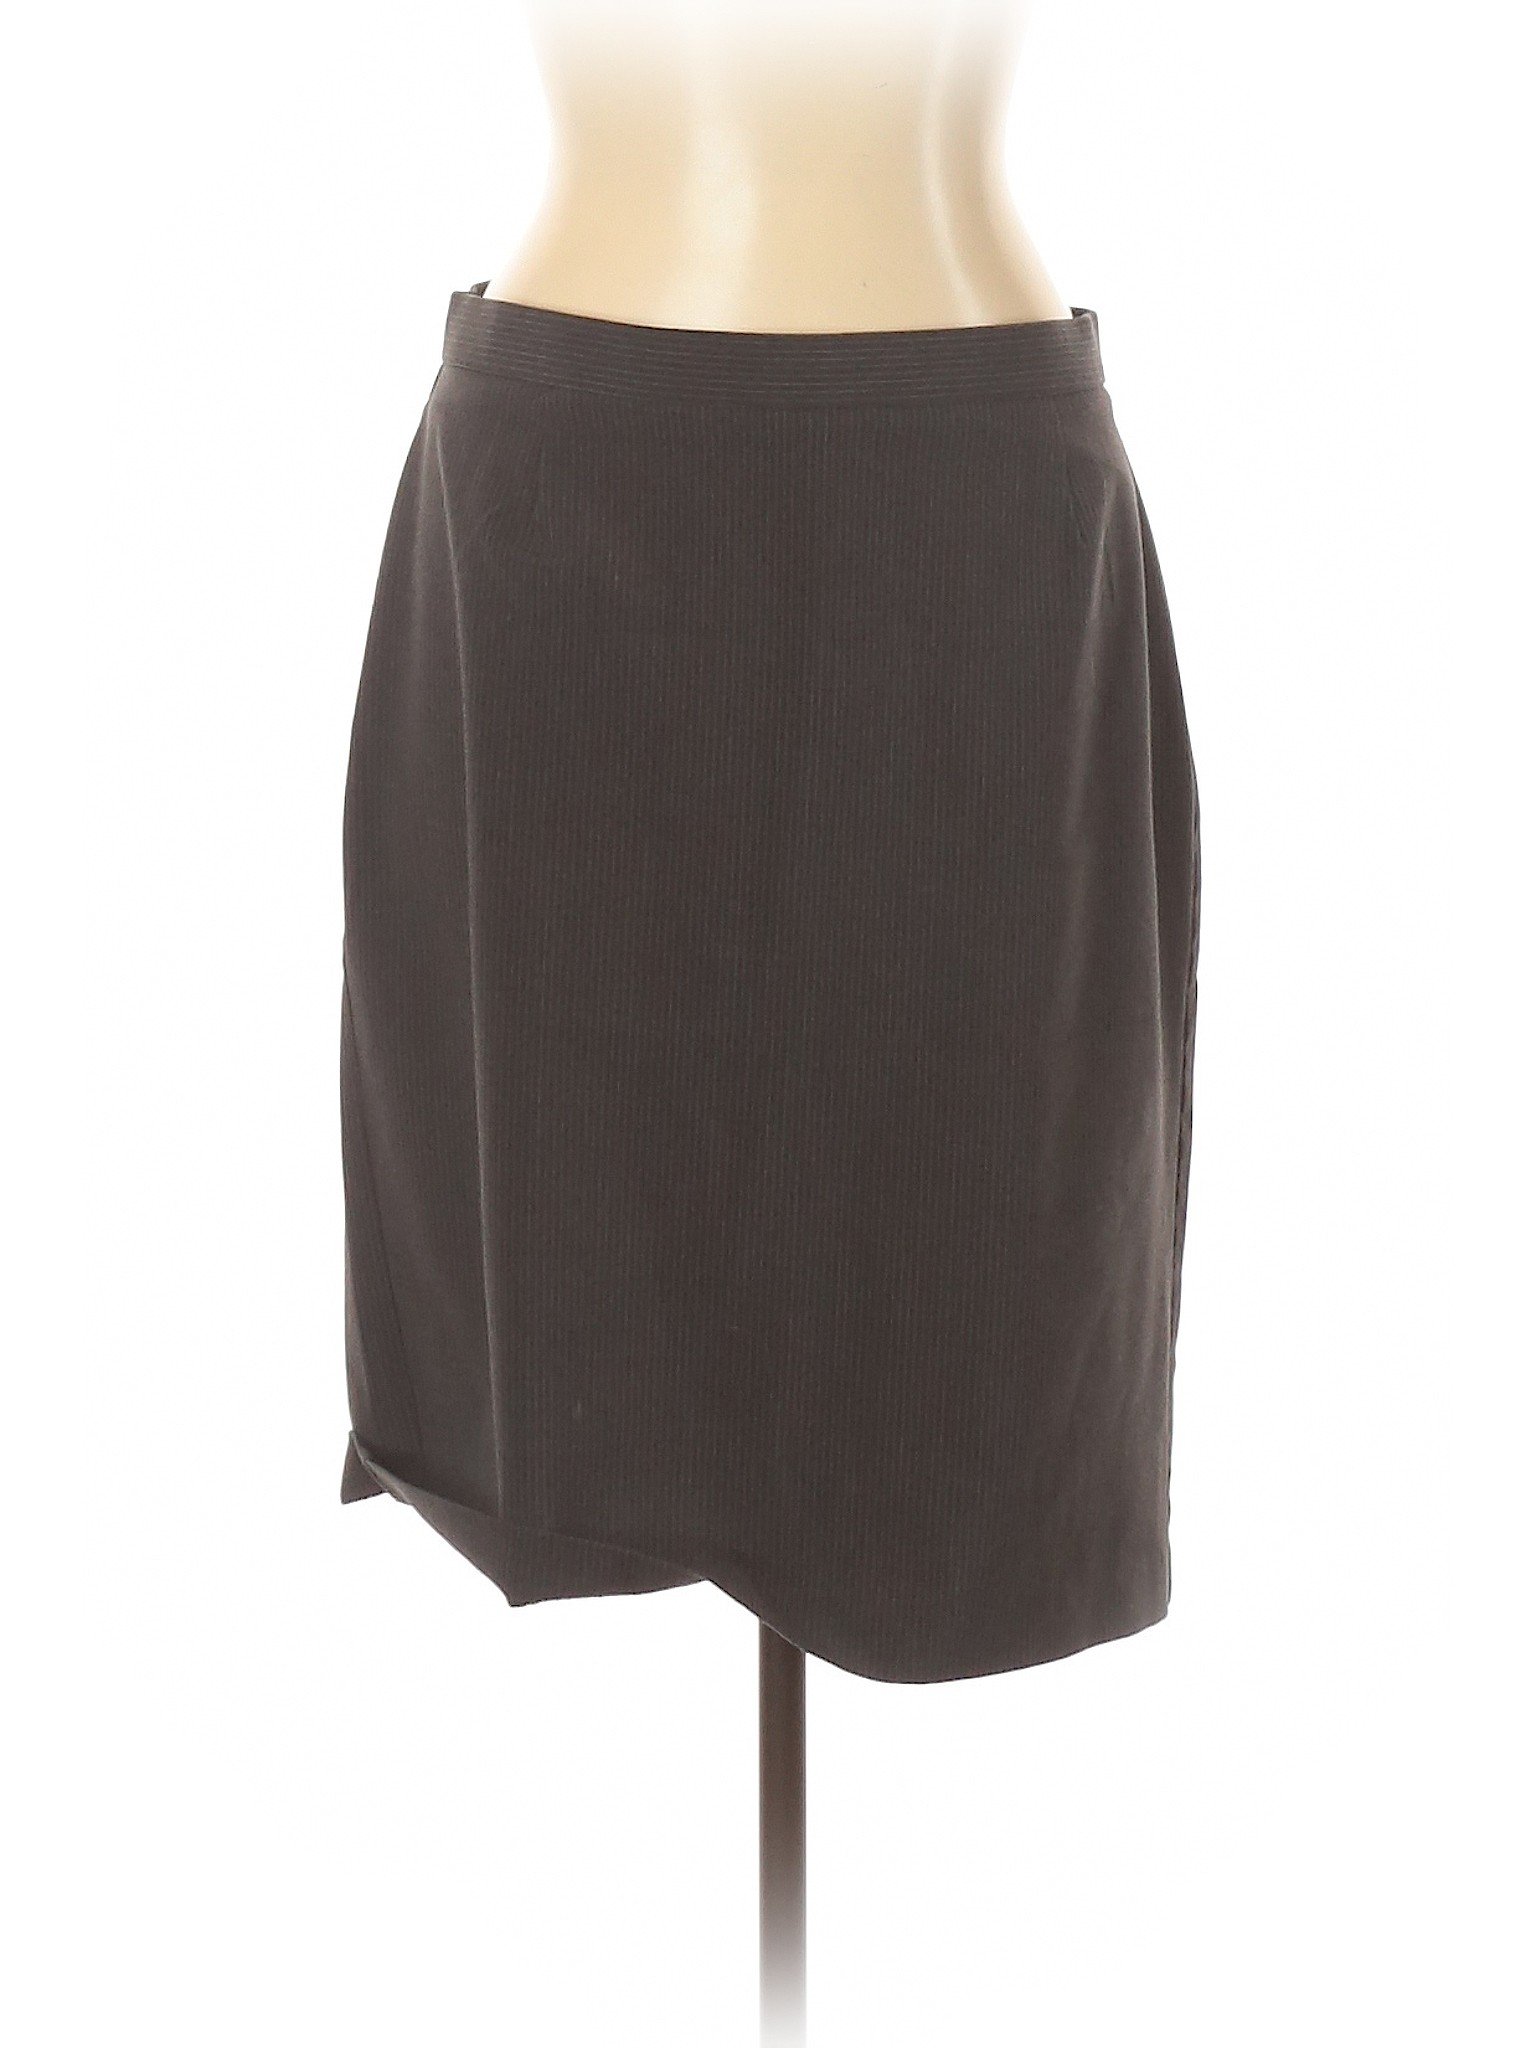 Briggs New York Women Gray Casual Skirt 12 | eBay